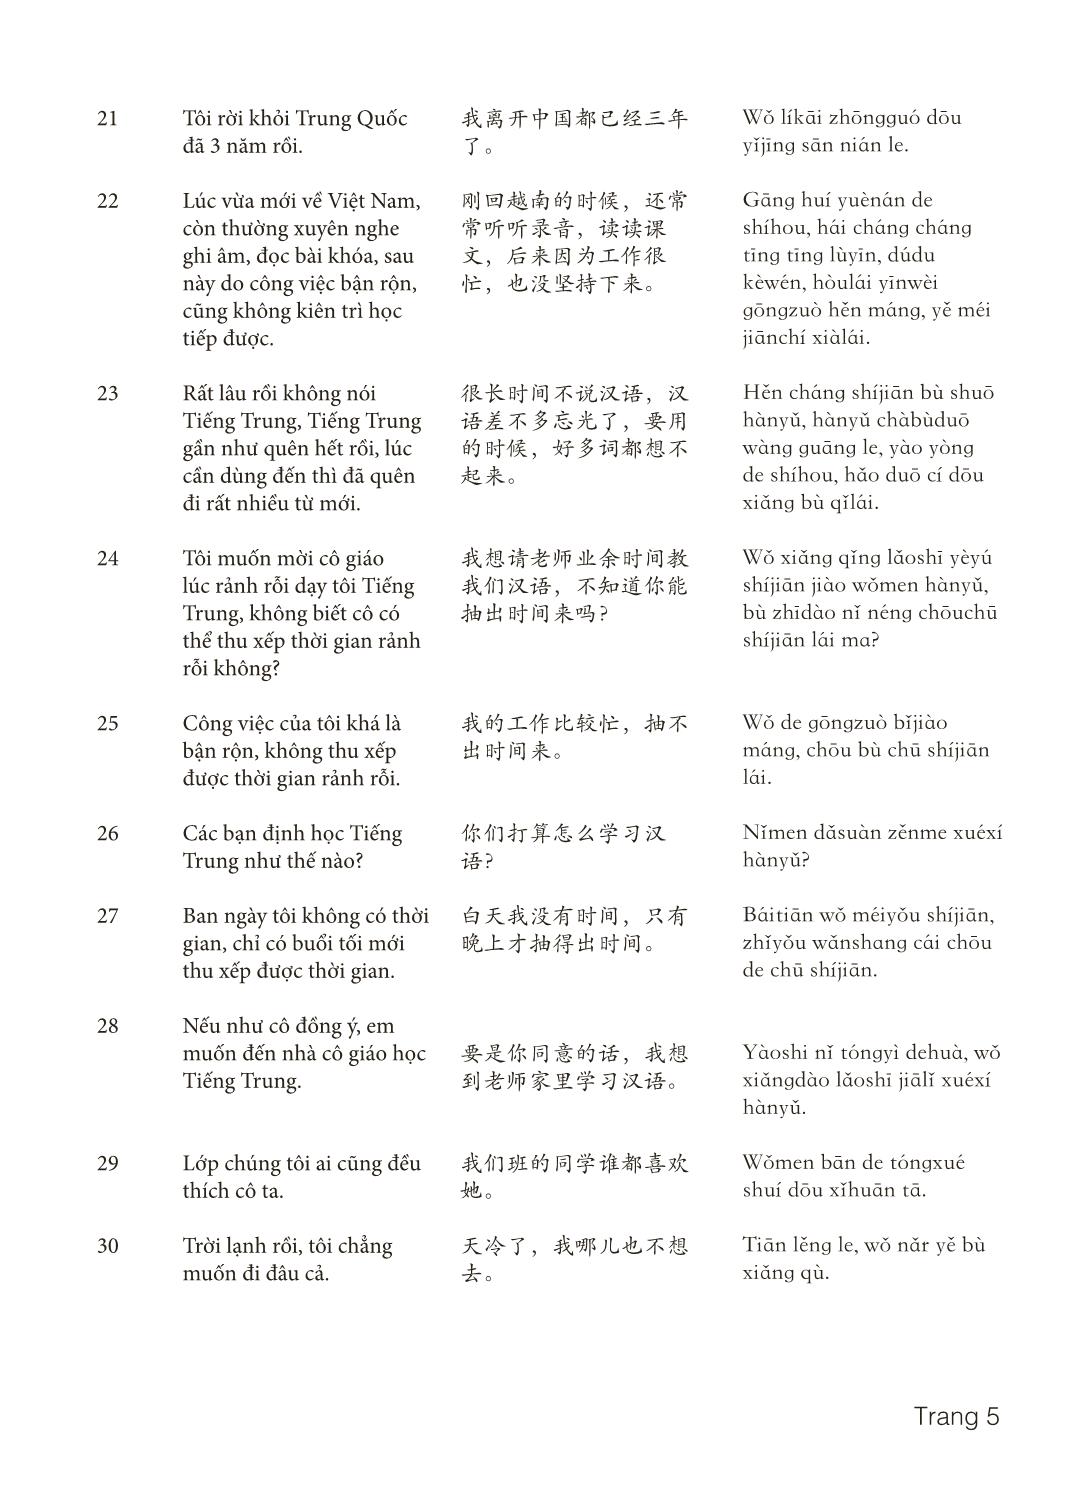 3000 Câu đàm thoại tiếng Hoa - Phần 27 trang 5